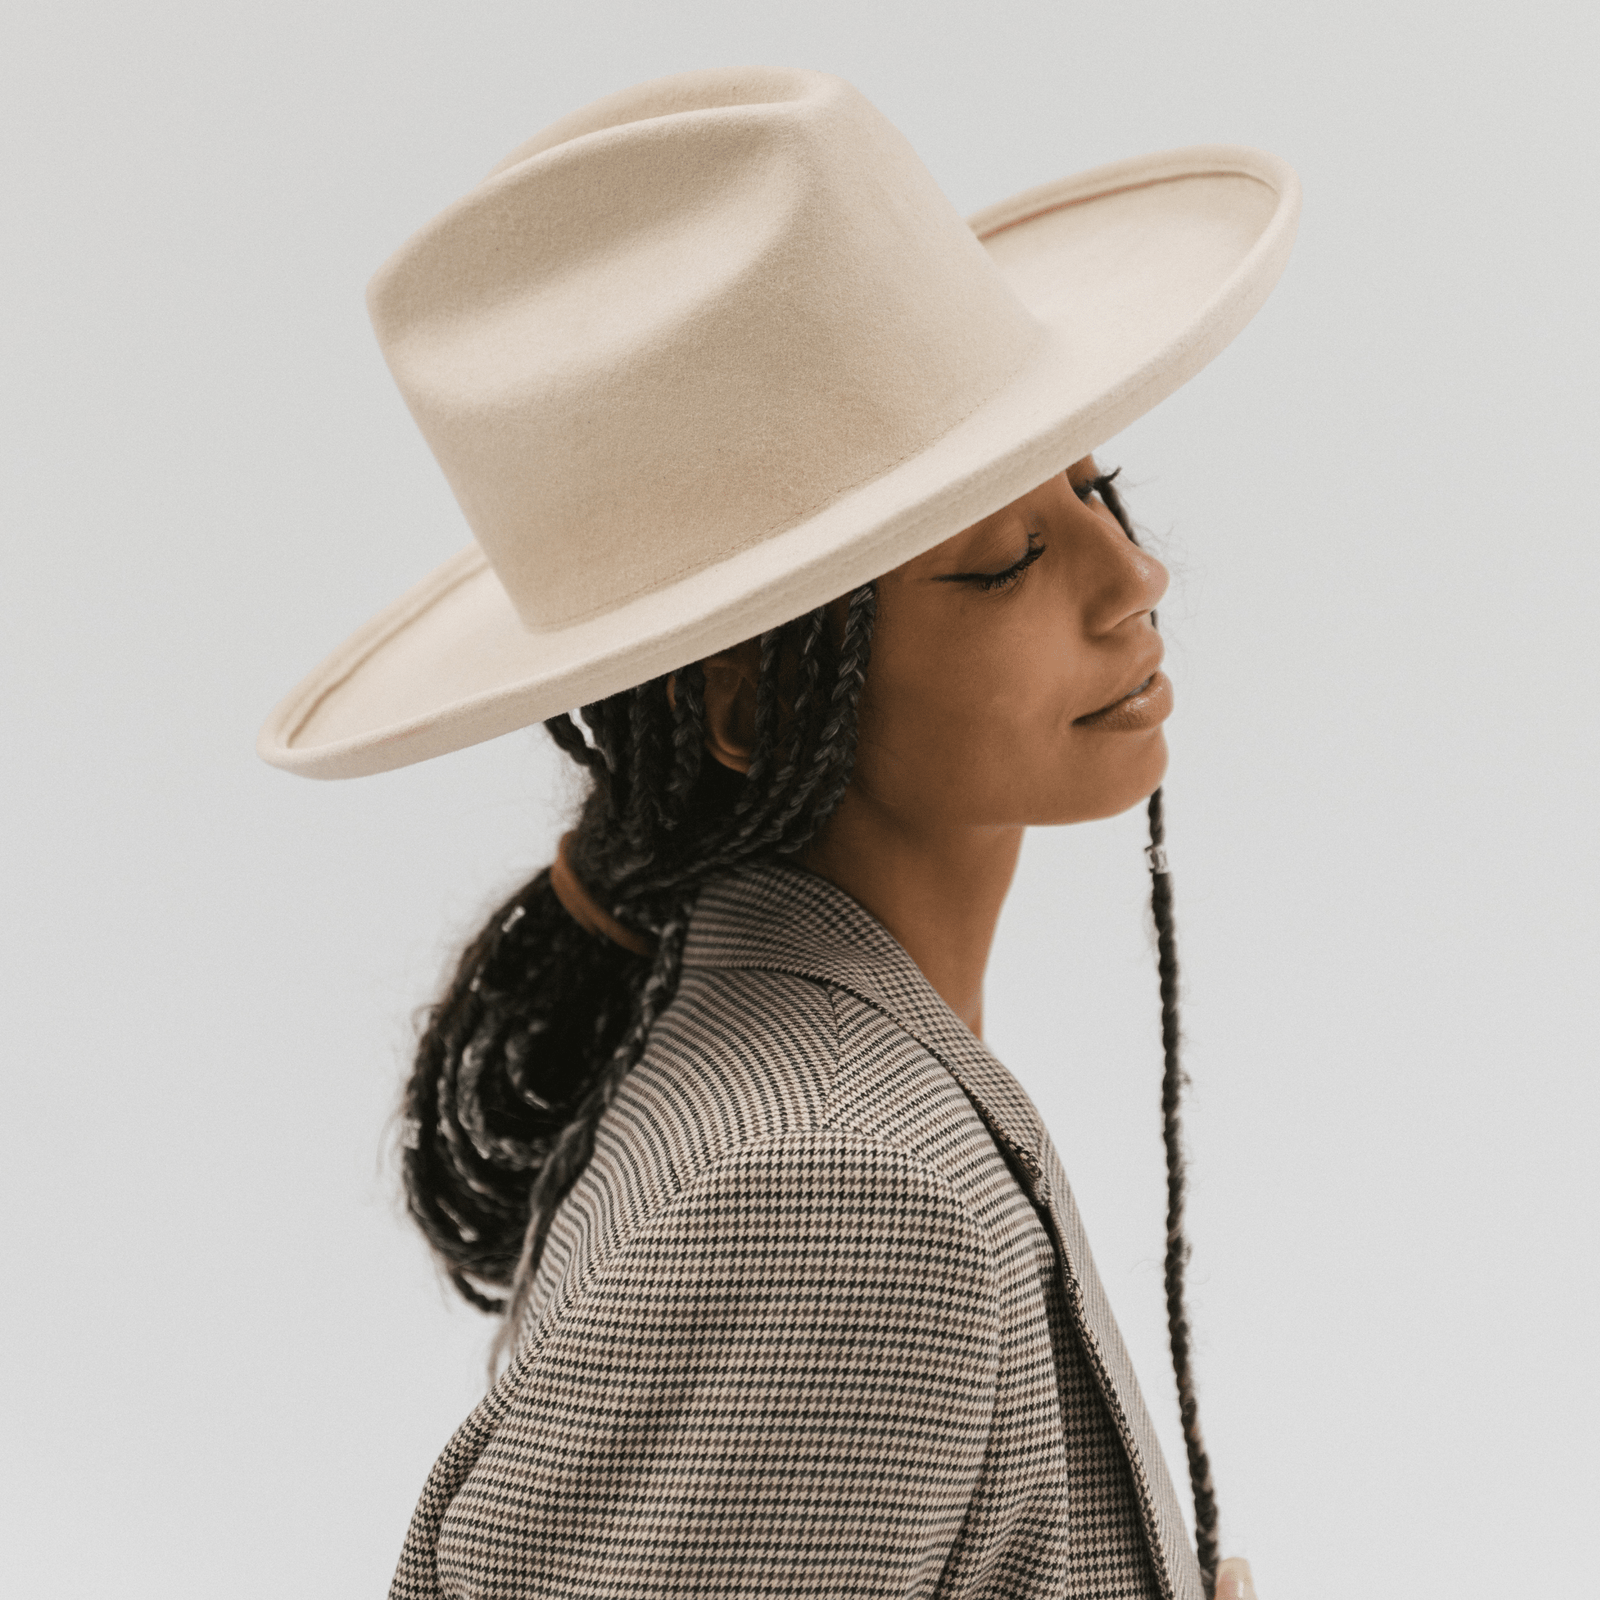 Women's Felt Cowboy Hat, Wholesale Hats